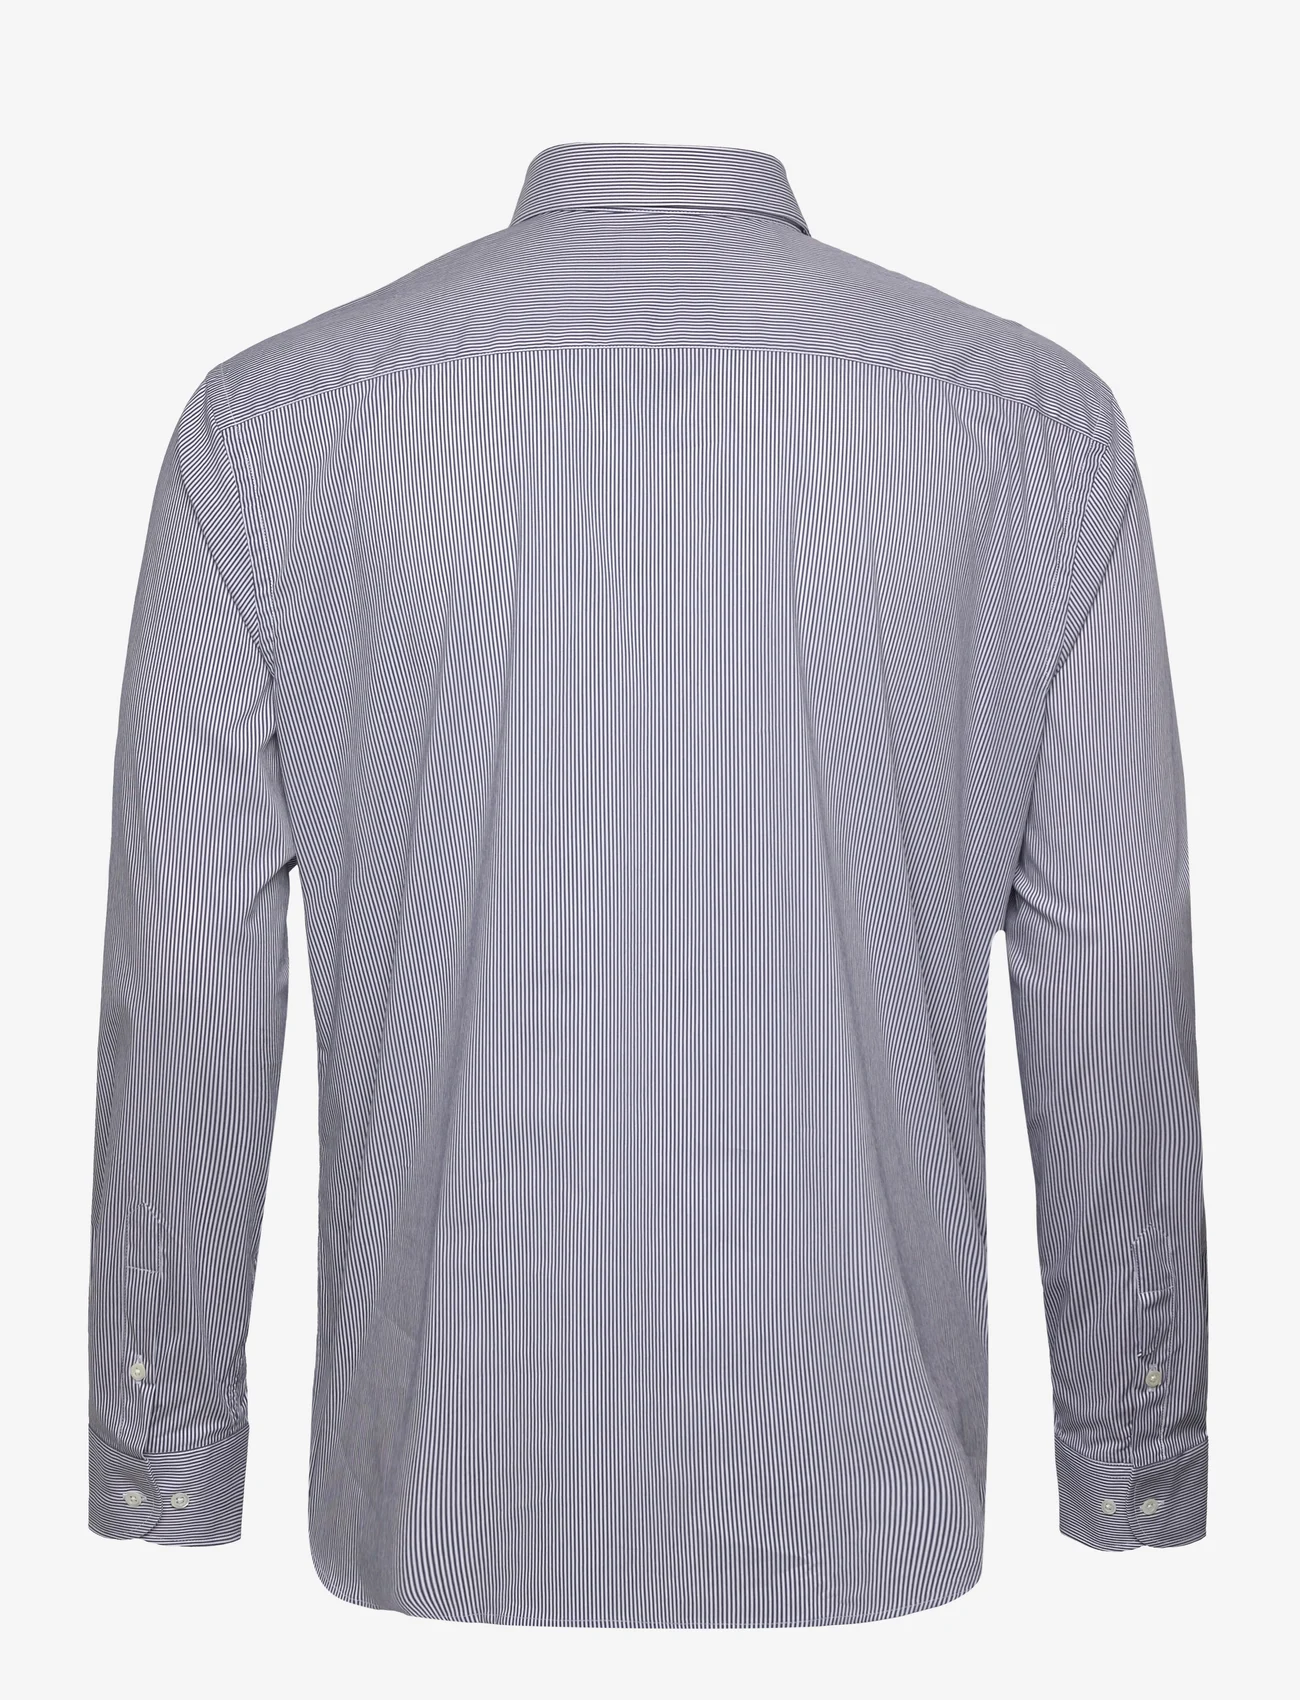 Emporio Armani - SHIRT - business shirts - avio - 1